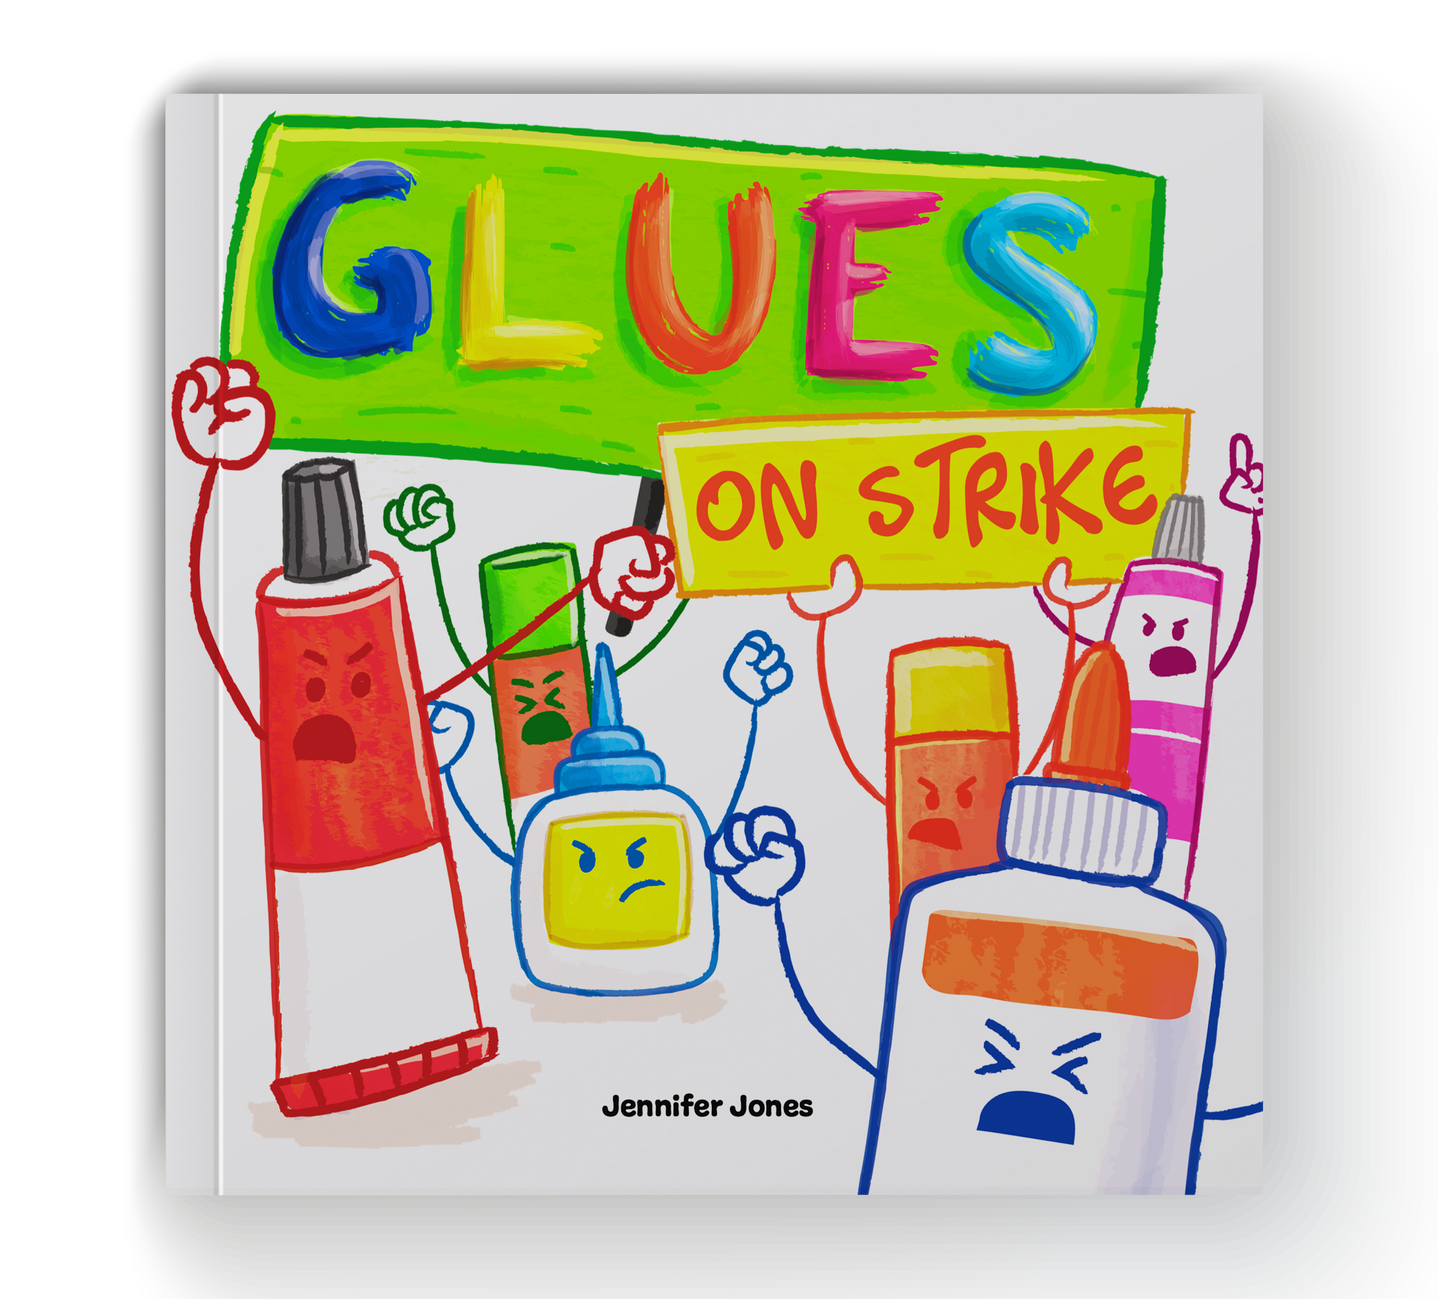 Glues On Strike Book + Lesson Plan Bundle